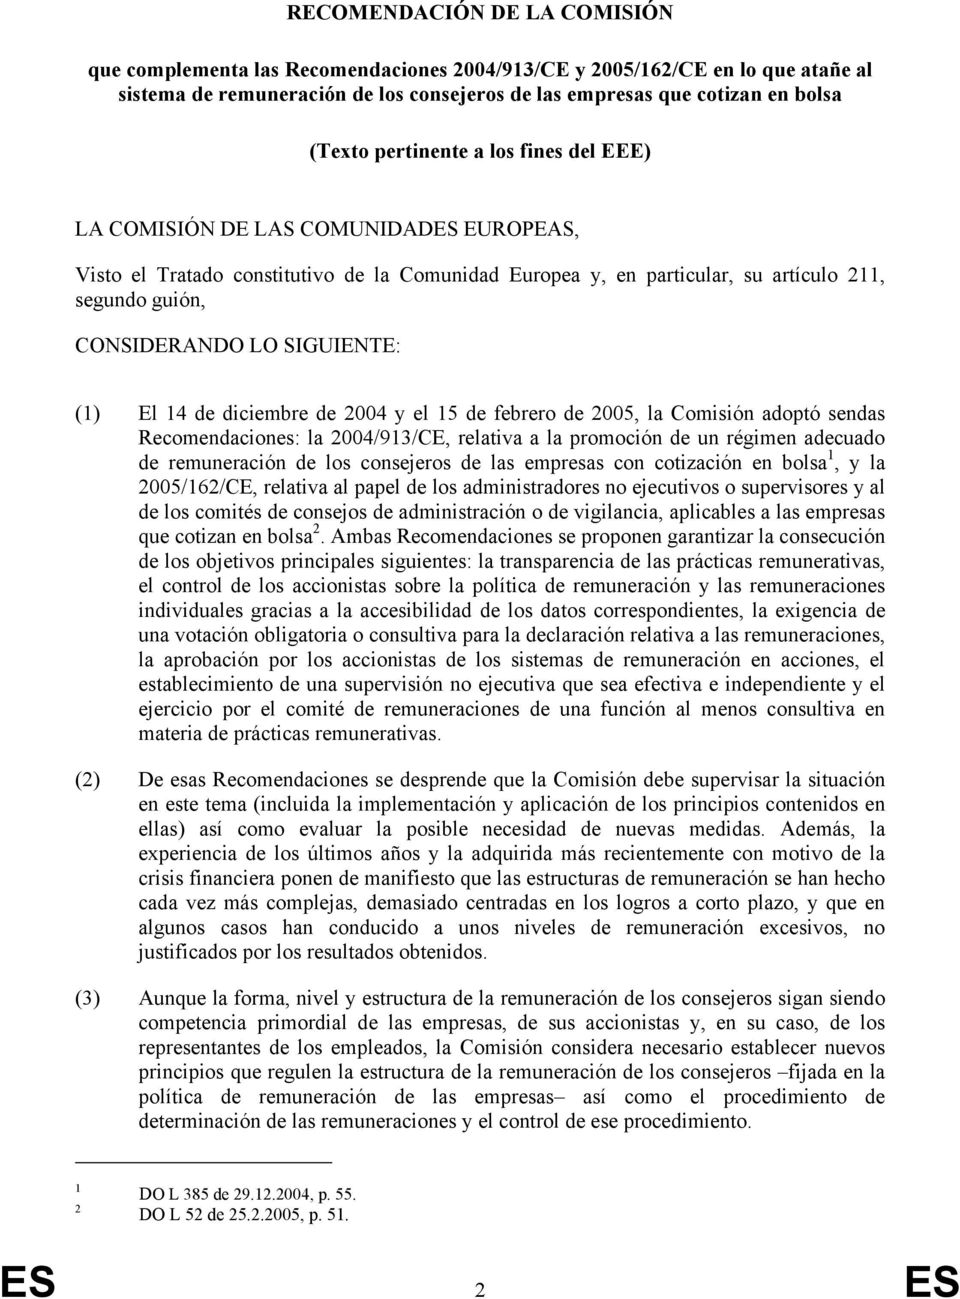 SIGUIENTE: (1) El 14 de diciembre de 2004 y el 15 de febrero de 2005, la Comisión adoptó sendas Recomendaciones: la 2004/913/CE, relativa a la promoción de un régimen adecuado de remuneración de los